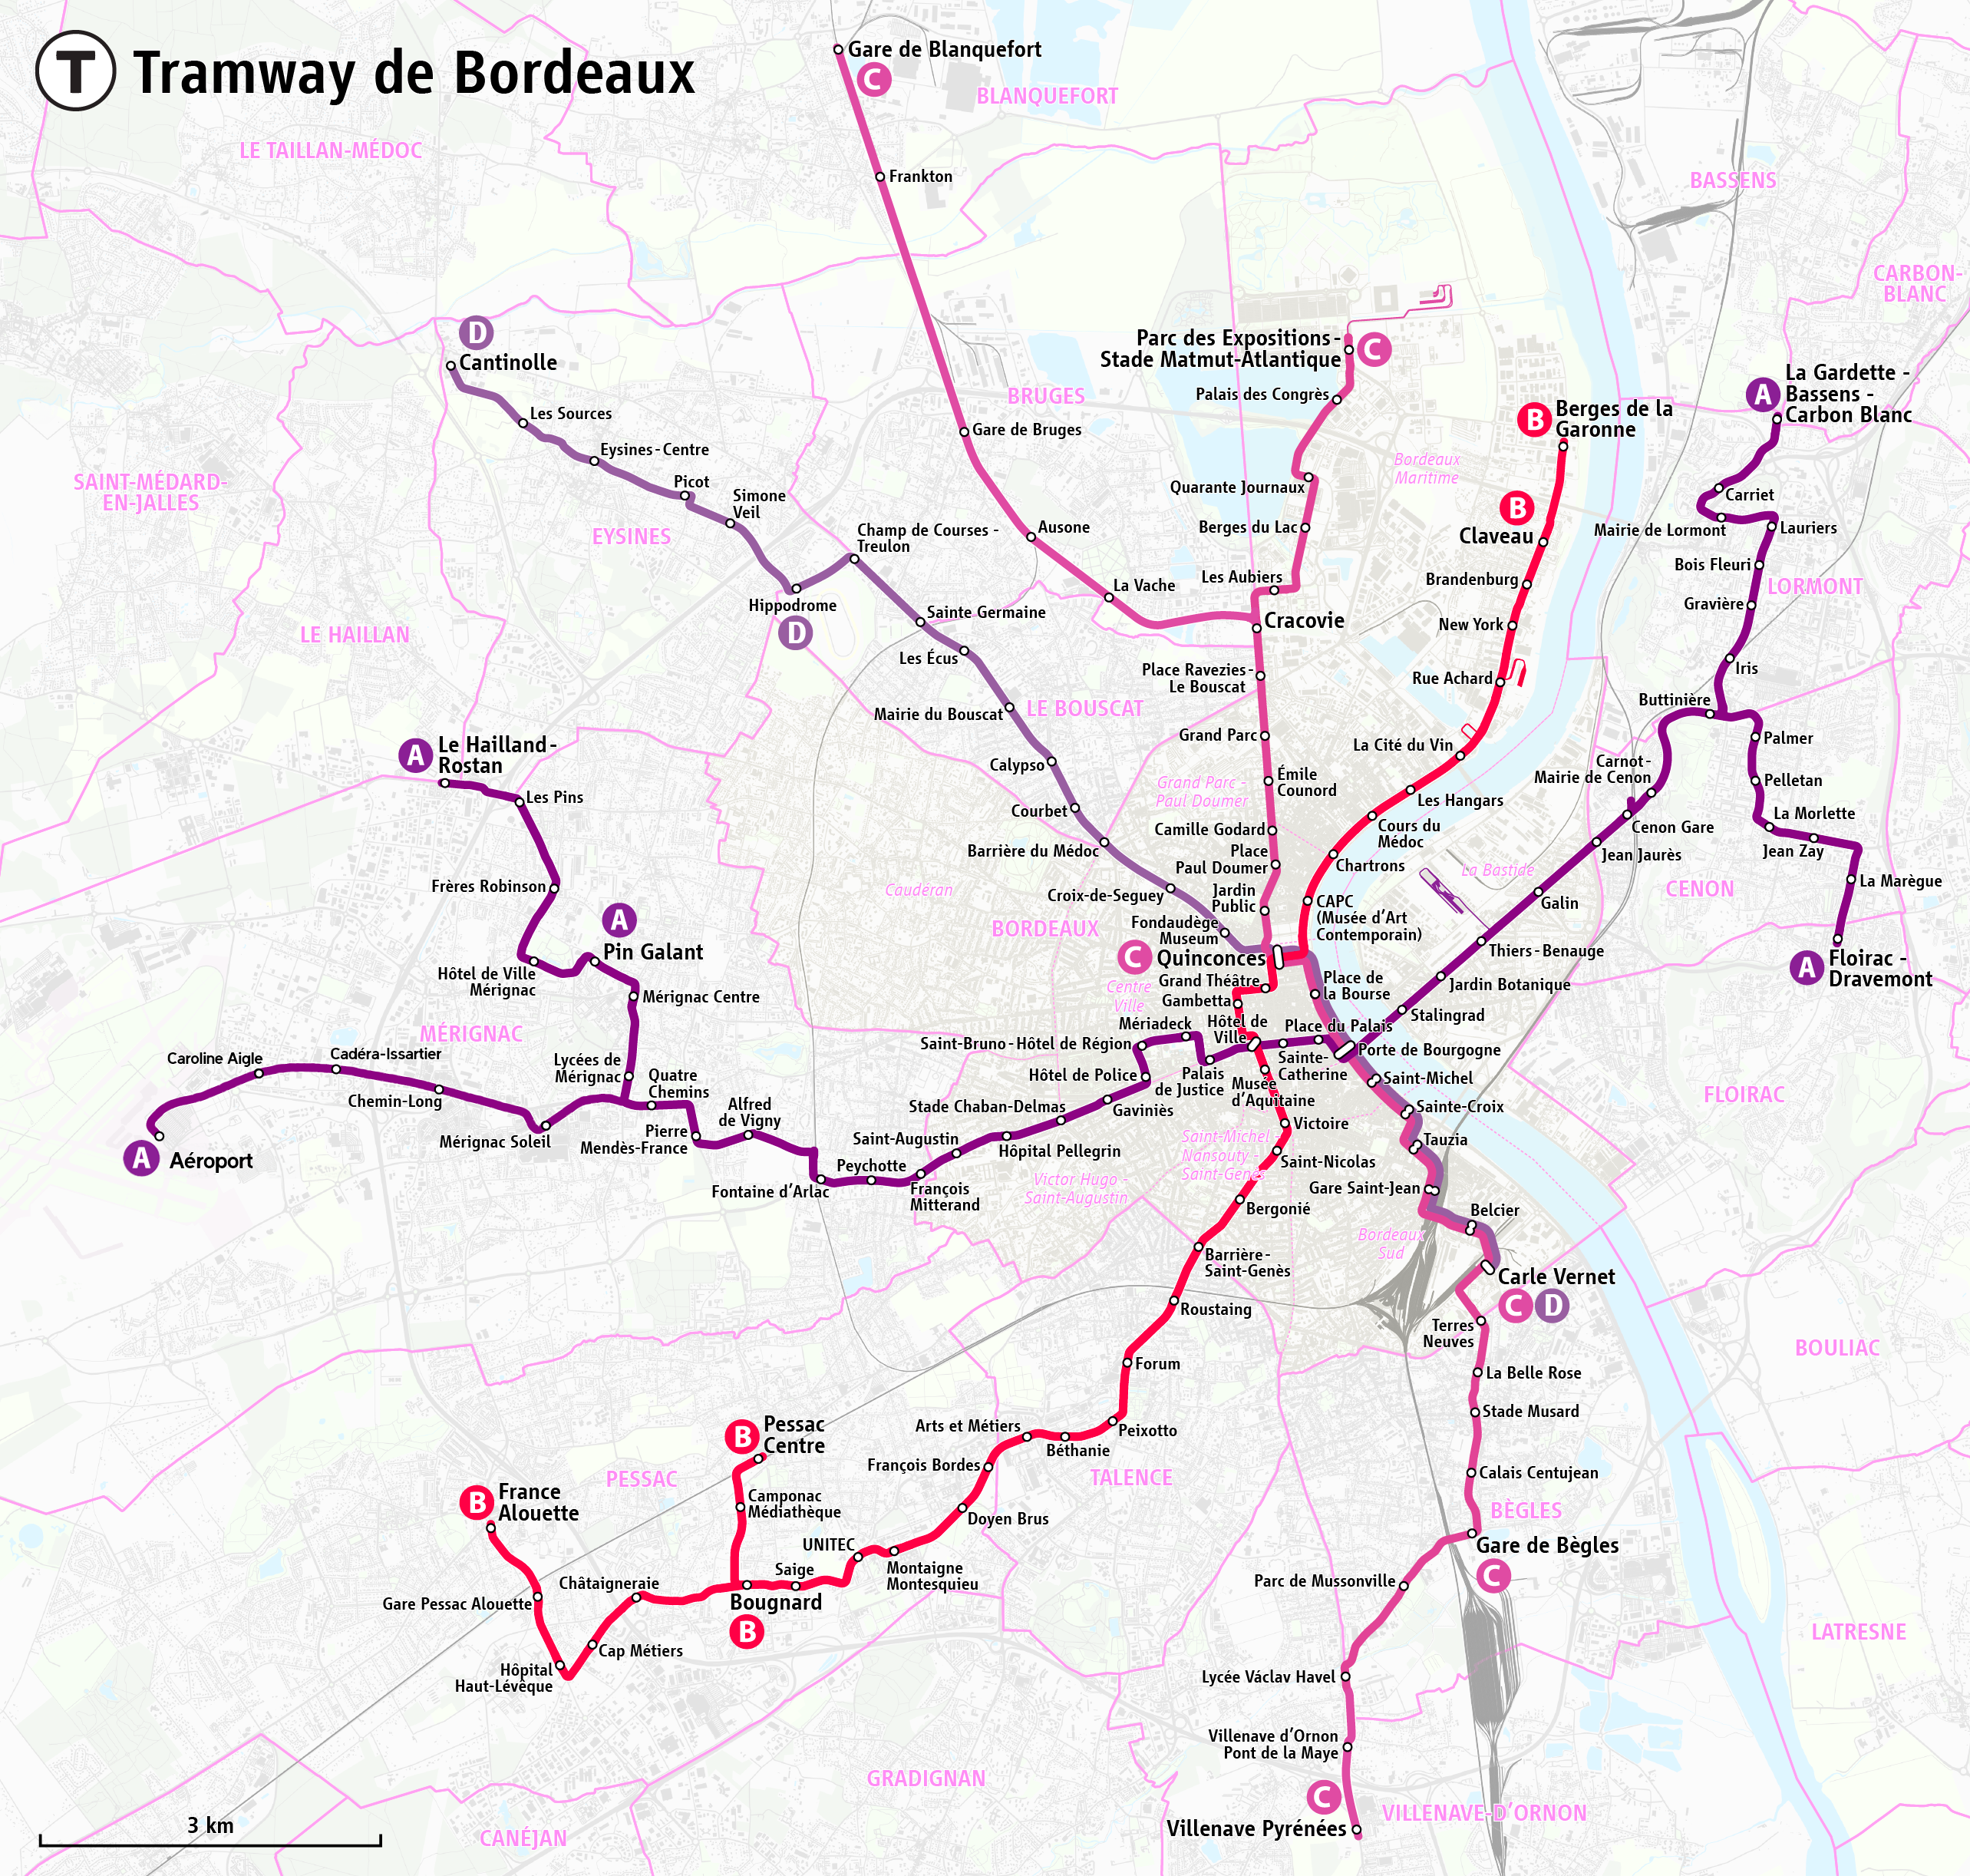 carte tram bordeaux File:Plan du réseau des tramways de Bordeaux.png   Wikimedia Commons